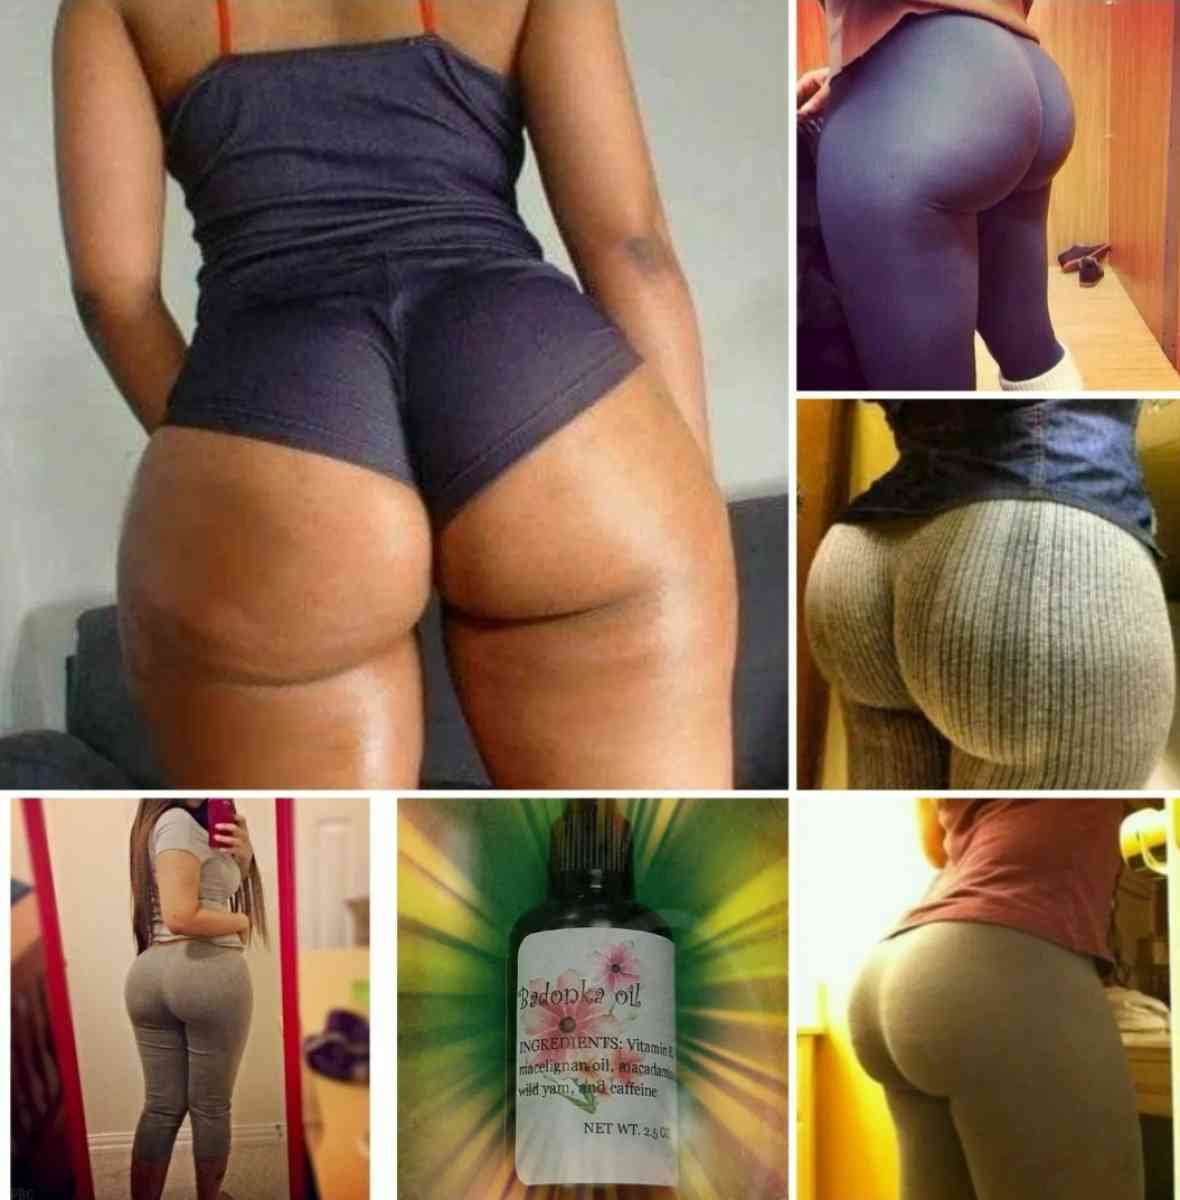 Brazilian butt oil